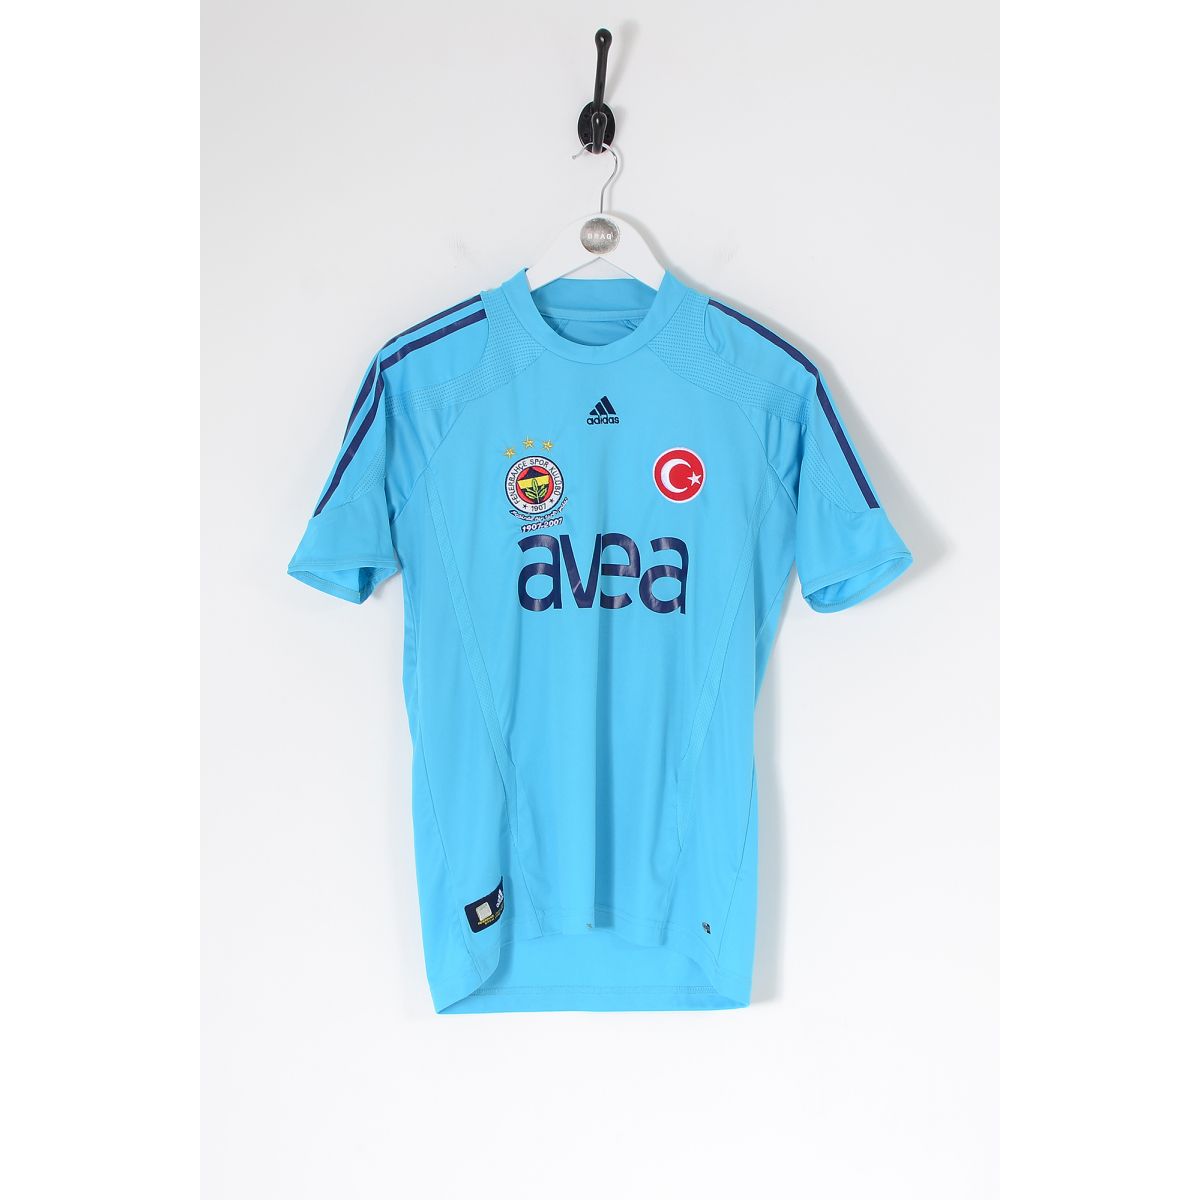 Vintage ADIDAS Fenerbahçe S.K. 07-08 Kit Football Shirt Blue Small